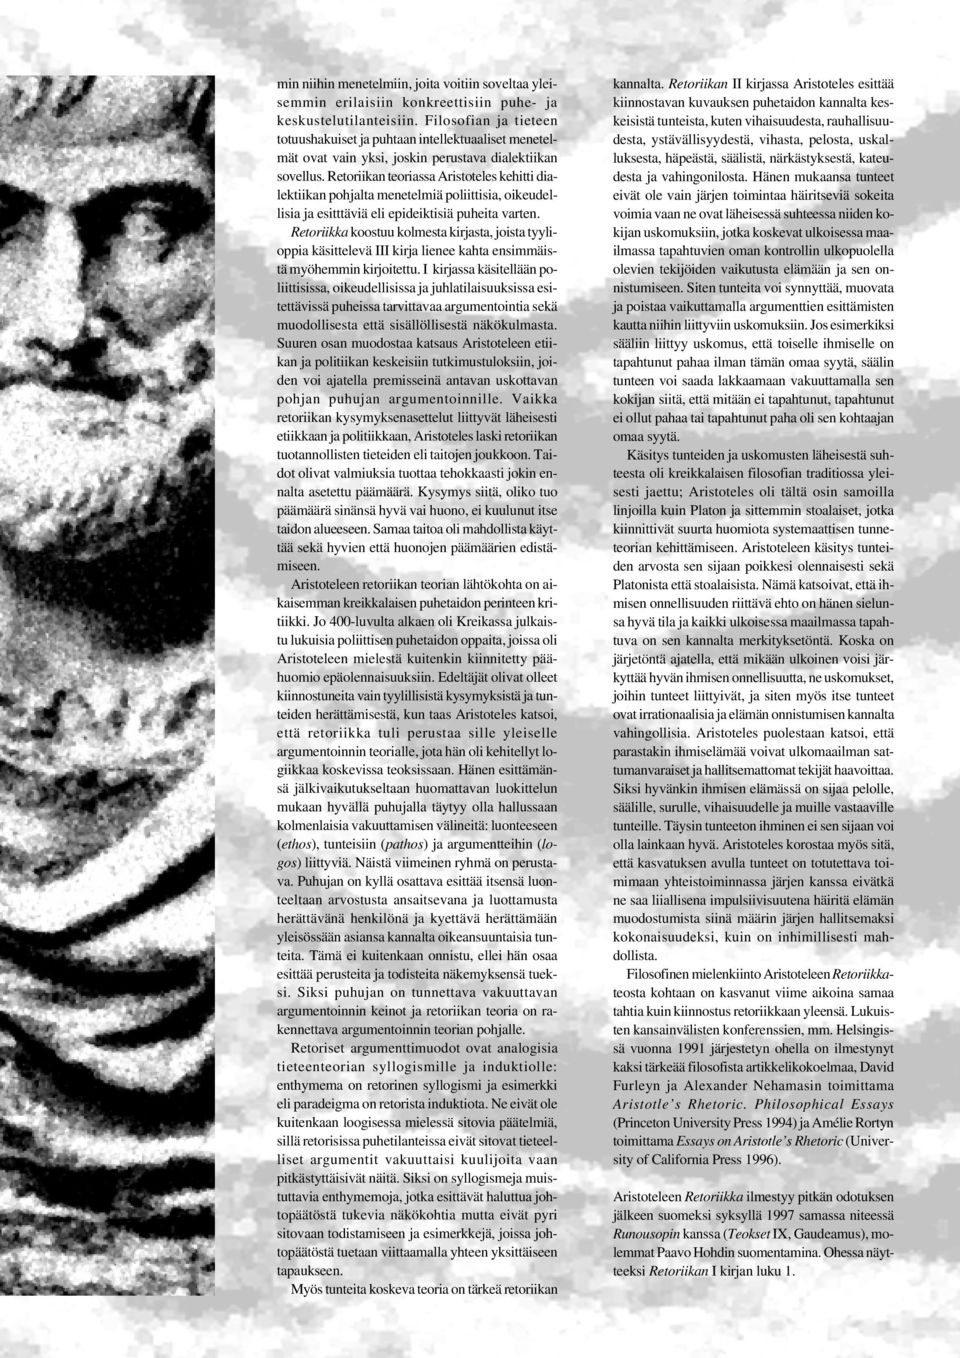 Retoriikan teoriassa Aristoteles kehitti dialektiikan pohjalta menetelmiä poliittisia, oikeudellisia ja esitttäviä eli epideiktisiä puheita varten.